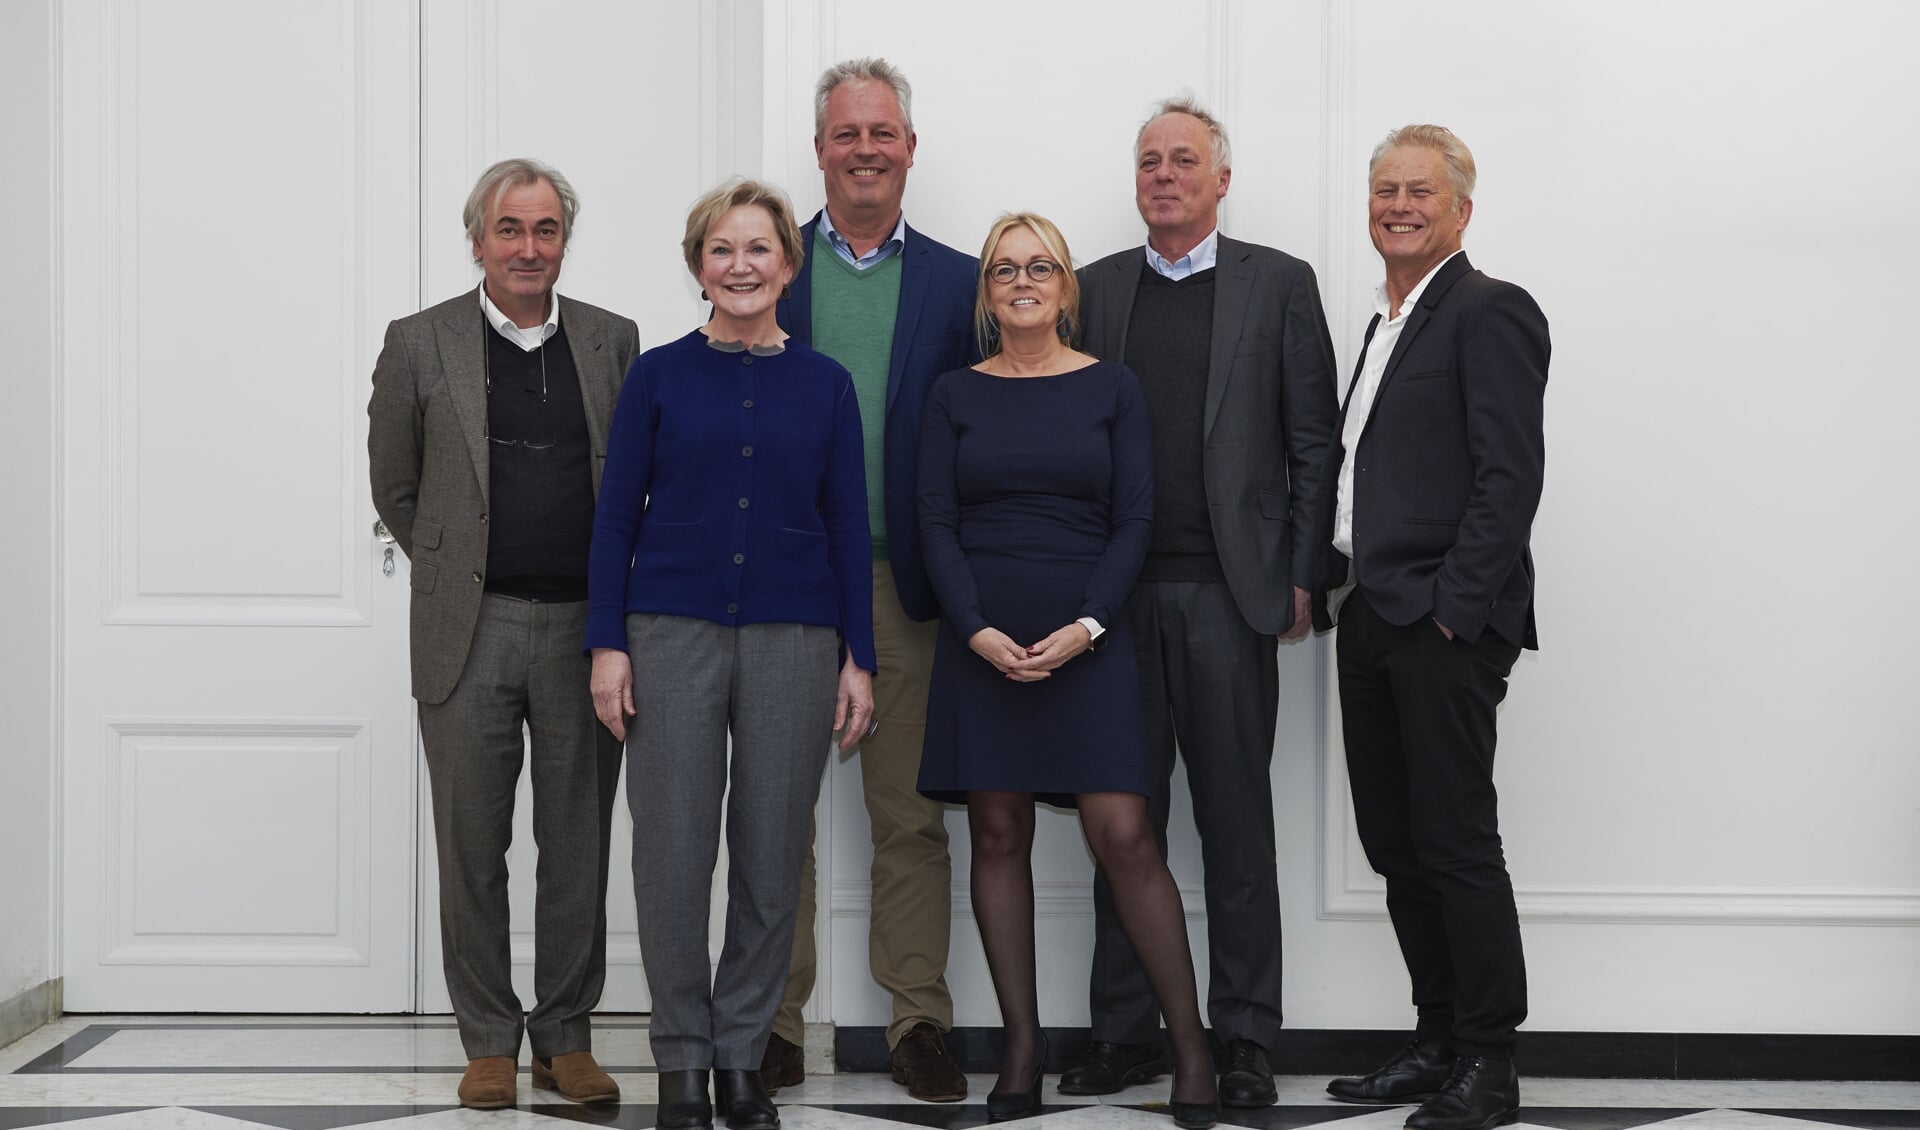 Het nieuwe bestuur met v.l.n.r.: Marc à Campo, Nel Viersen (voorzitter),  Maarten van Oostveen (penningmeester), Marieke Schriks, Herman Krans (secretaris) en Wouter Hooijmans. Foto: Dik Windhouwer